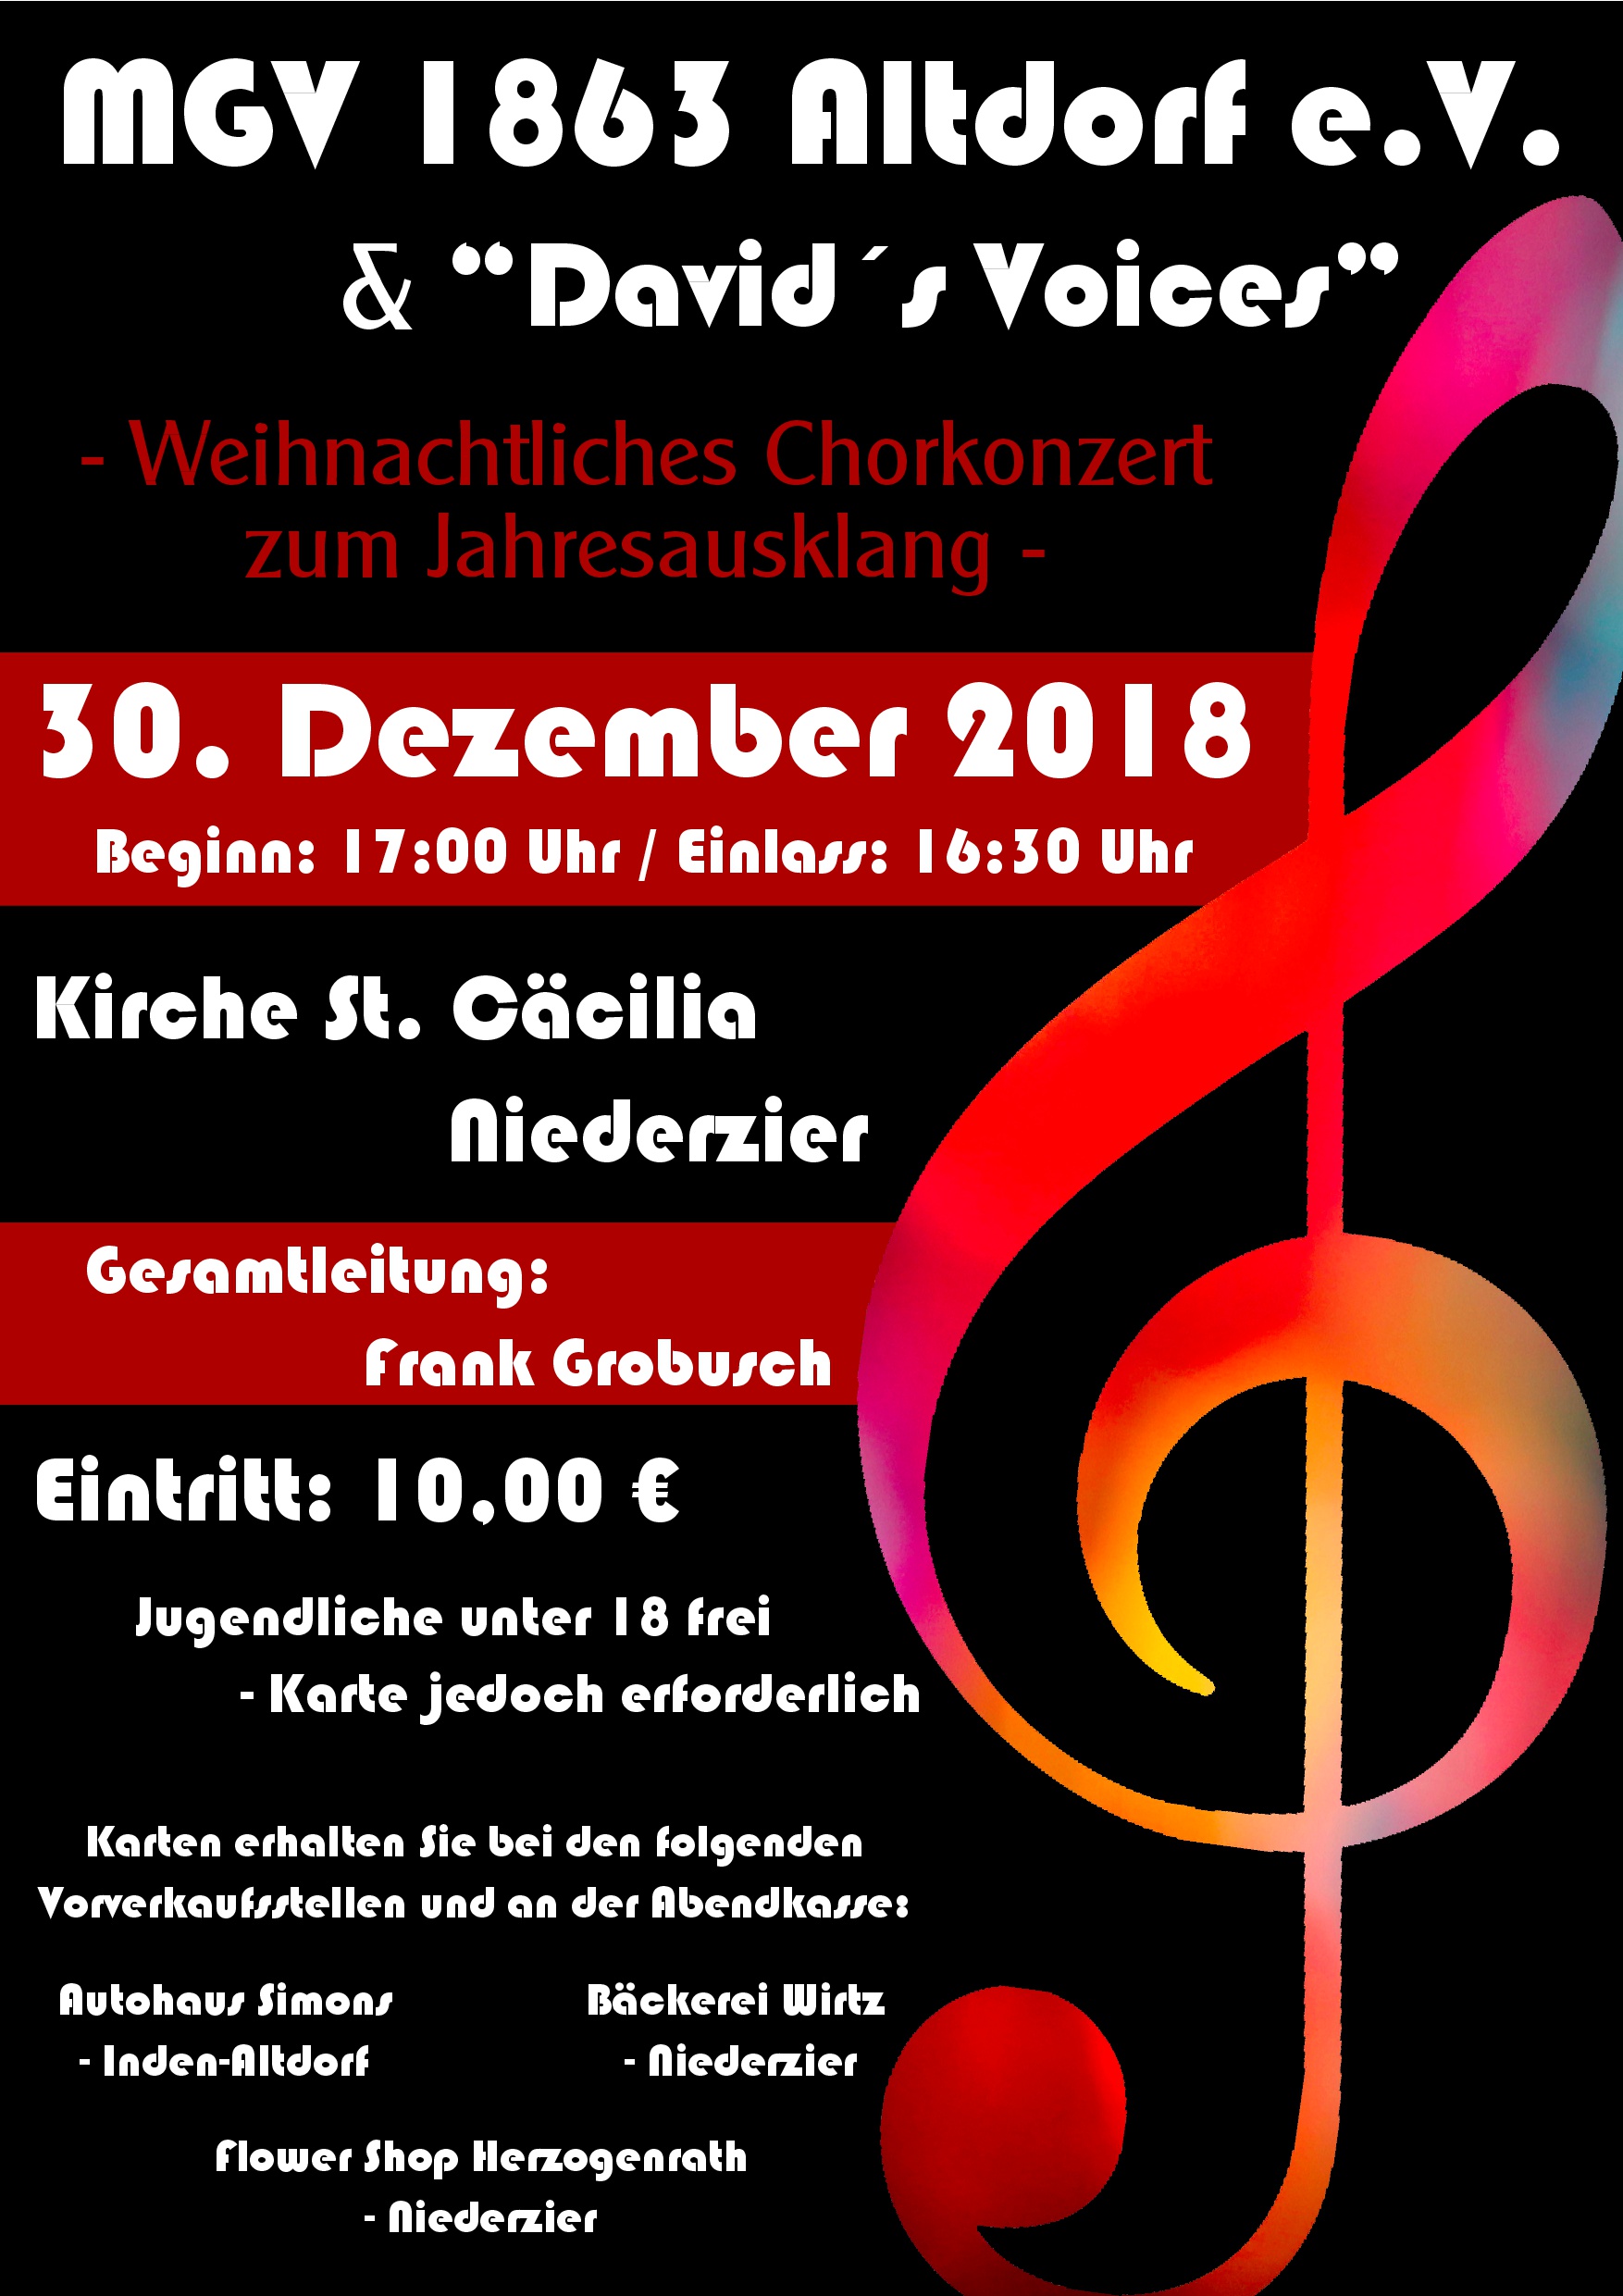 Weihnachtliches Chorkonzert zum Jahresausklang in St. Cäcilia Niederzier